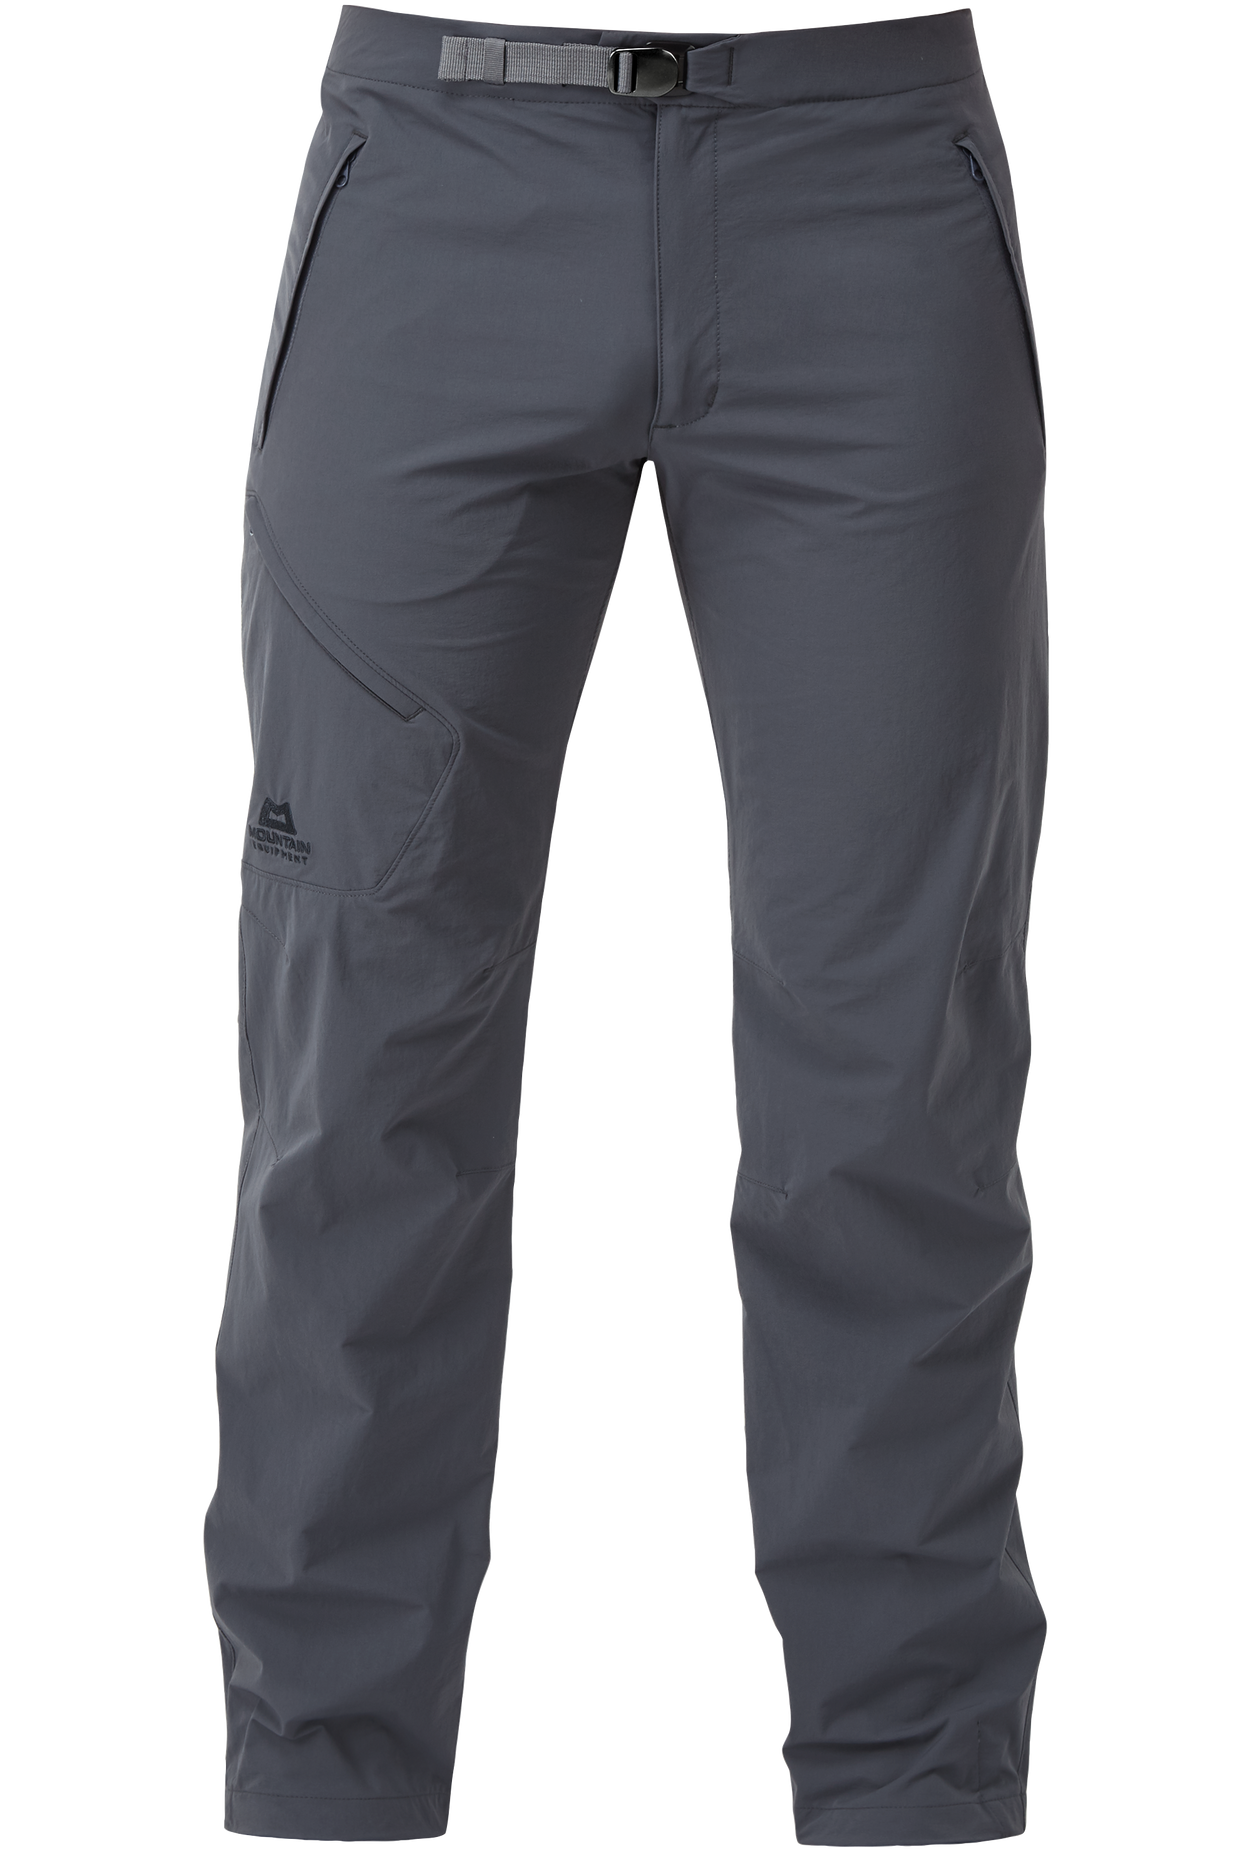 Mountain Equipment pánské softshellové kalhoty Comici Pant - zkrácené Barva: Ombre Blue, Velikost: 34/L